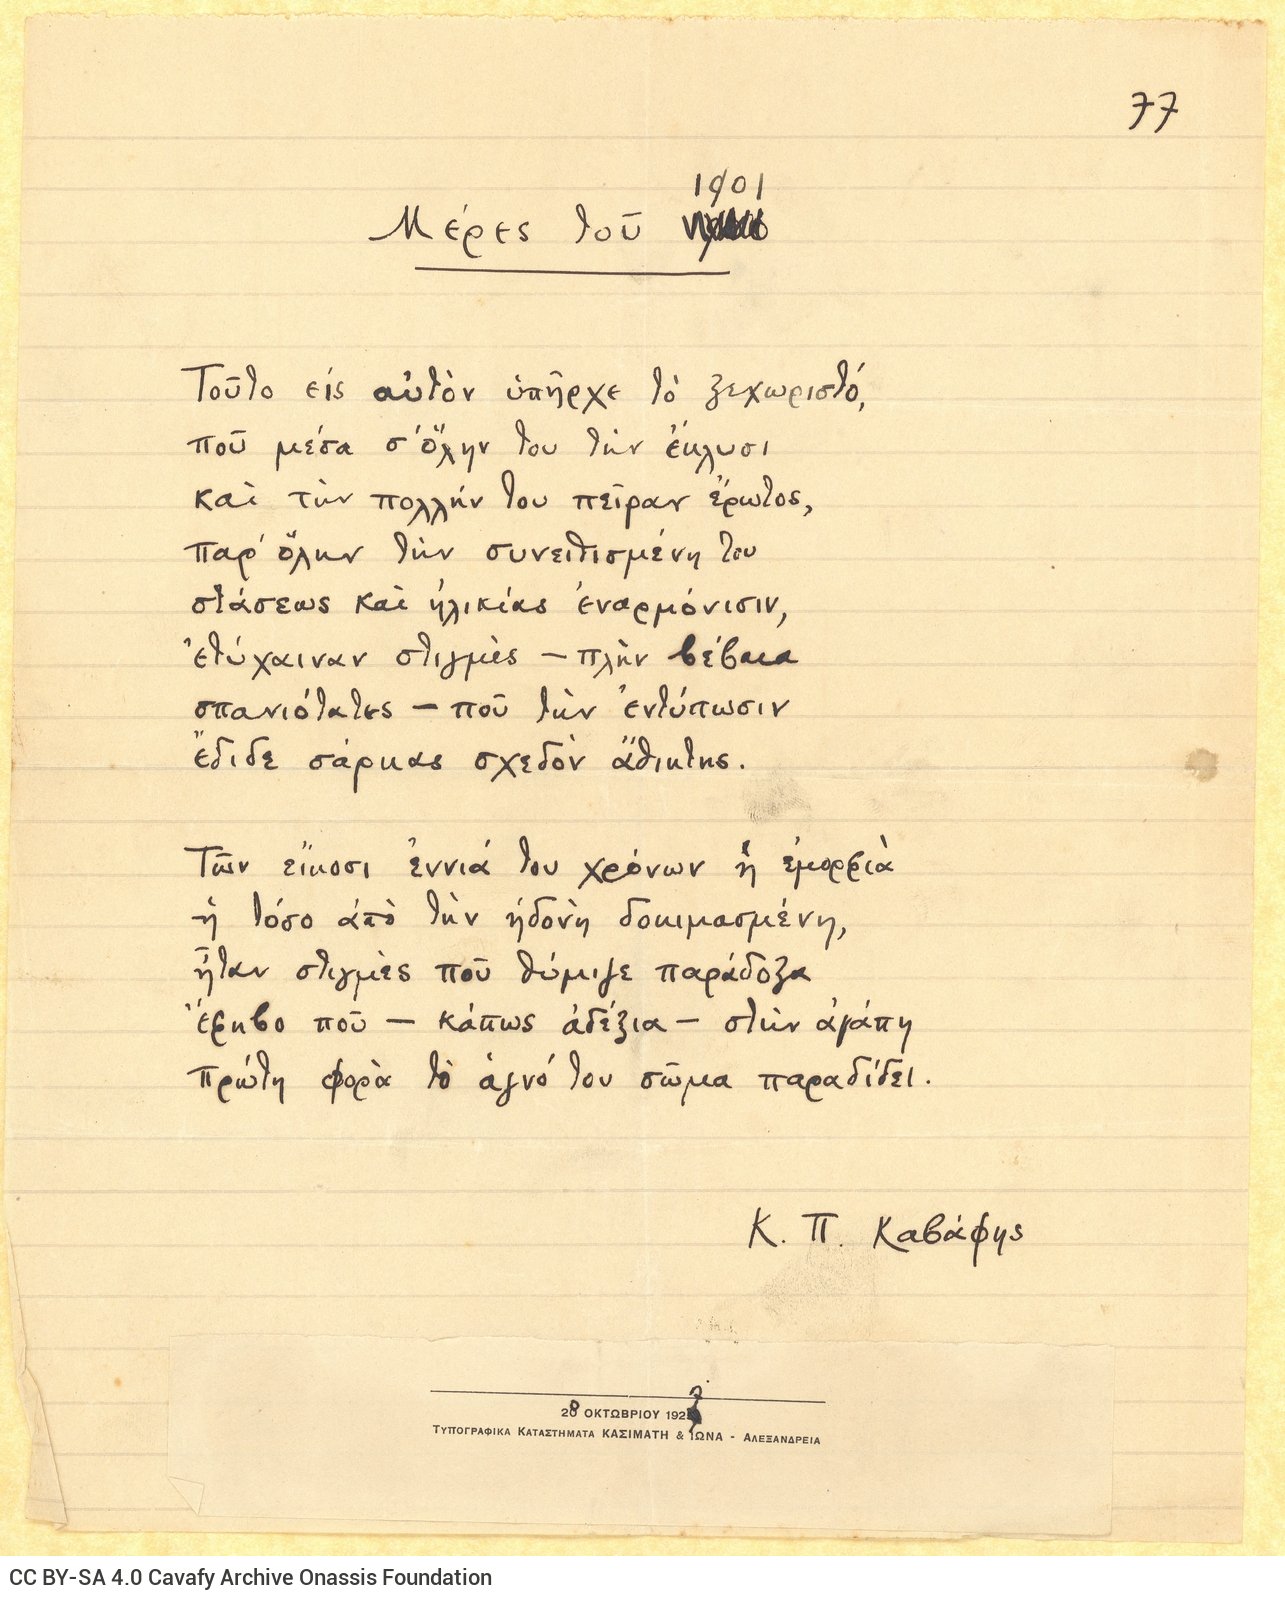 Χειρόγραφο του ποιήματος «Μέρες του 1901» στη μία όψη διαγραμμισμέν�